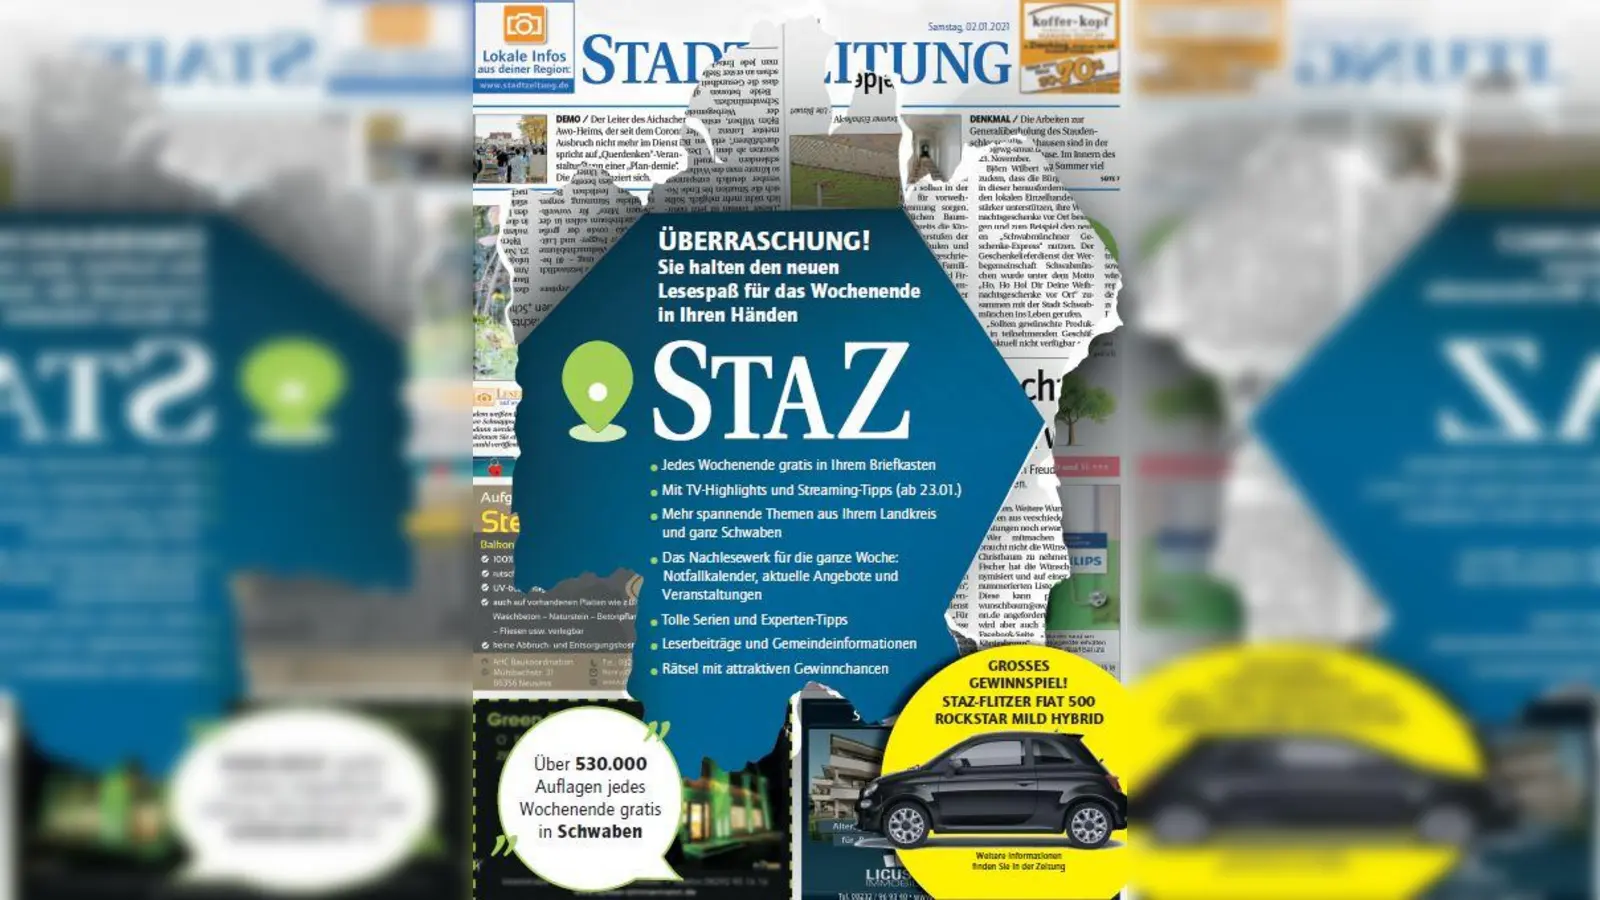 Die neue StaZ liefert jedes Wochenende die spannendsten und wichtigsten Geschichten aus den Regionen Augsburg, Paartal, Günzburg, Dillingen und Neu-Ulm. Mit der neuen Dachmarke hat die Augsburger Printausgabe zudem auf ein handlicheres Format umgestellt.  (Foto: staz)